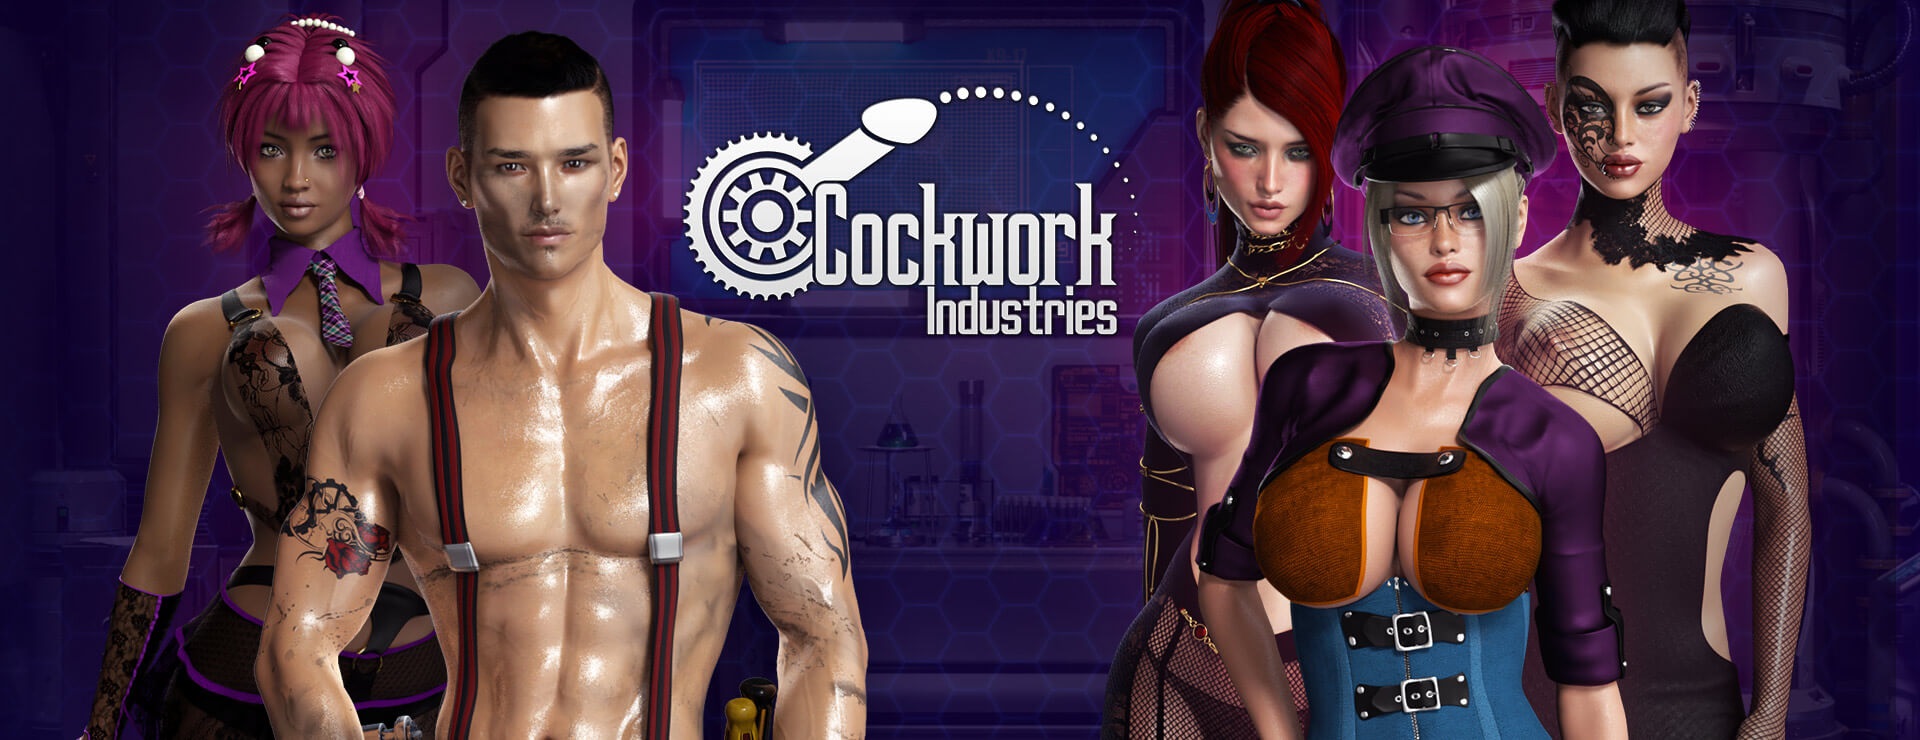 Cockwork Industries - Action Adventure Game